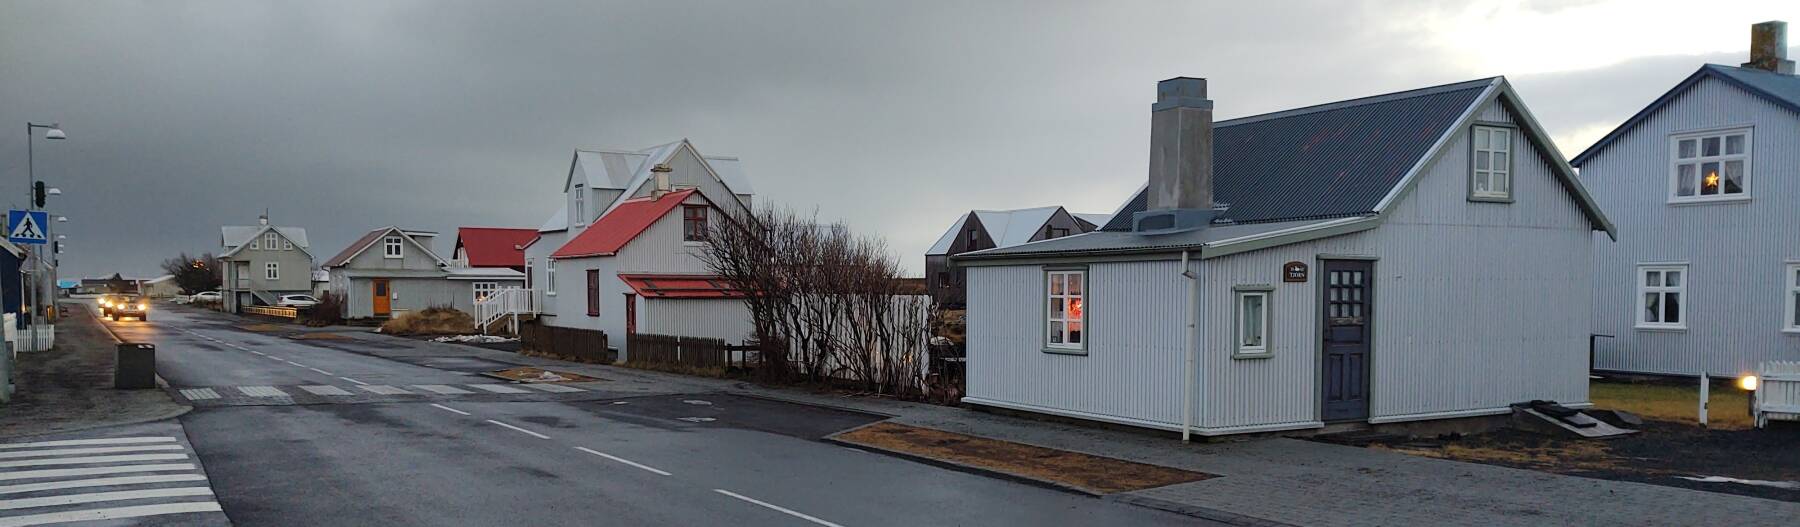 Main street through Eyrarbakki in southwestern Iceland.